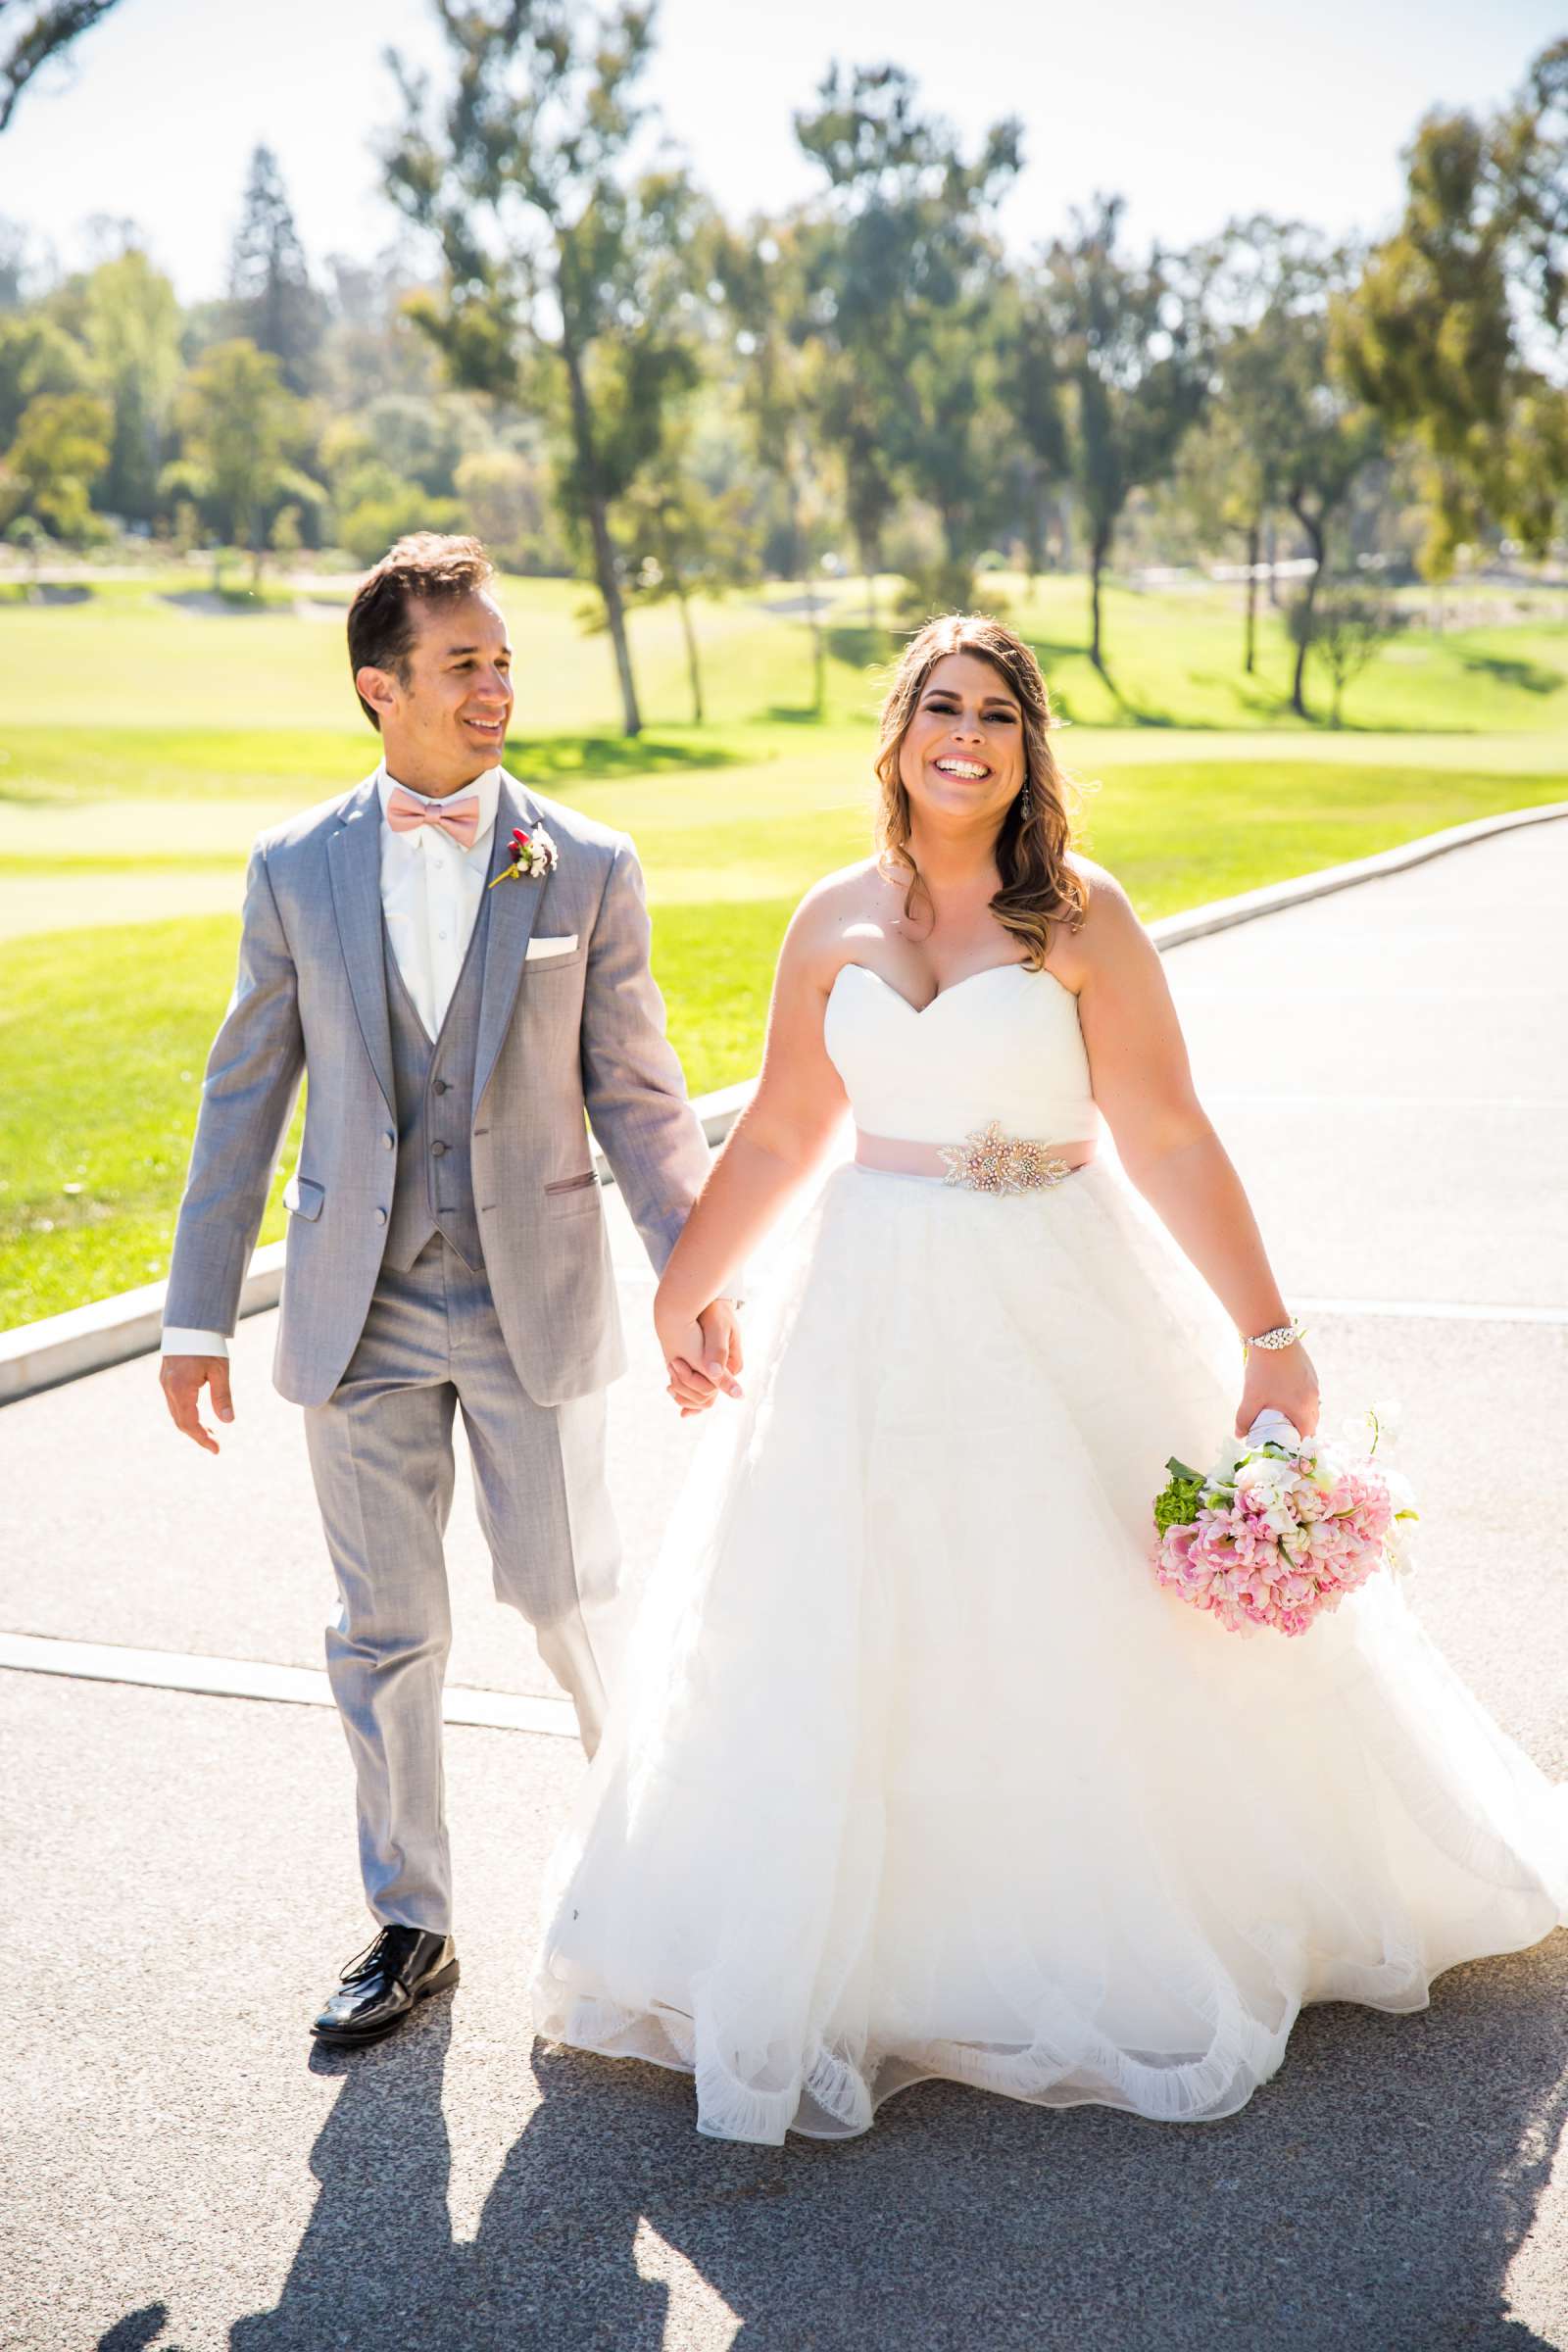 Rancho Santa Fe Golf Club Wedding coordinated by Monarch Weddings, Carolynn and Jon Wedding Photo #26 by True Photography